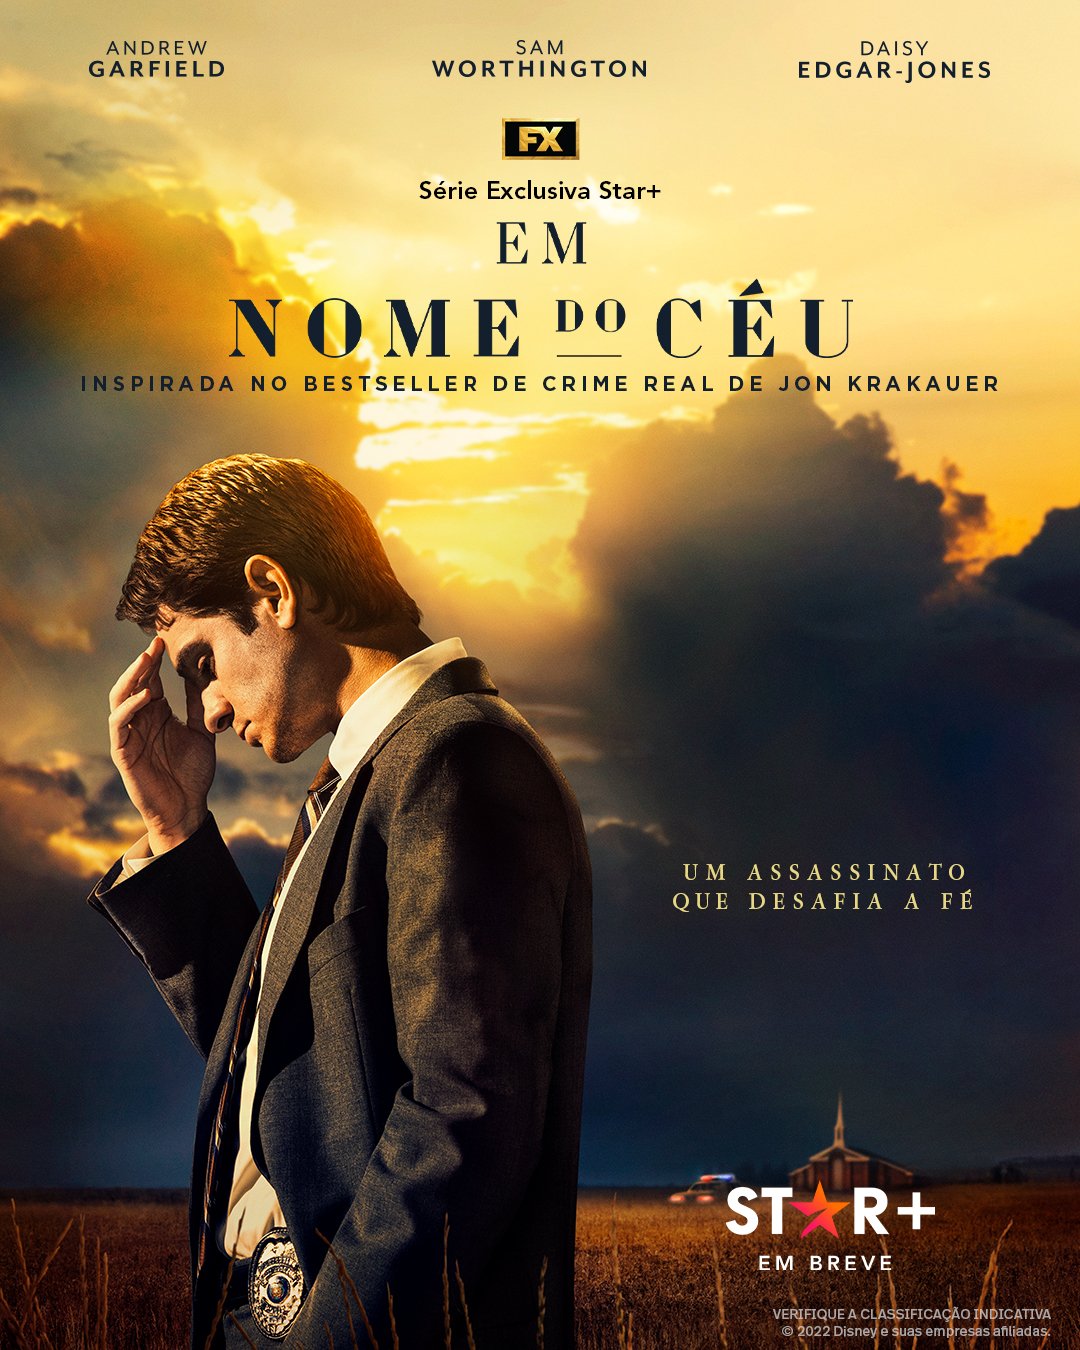 Poster-Em-Nome-do-Ceu Star+ confirma nova minissérie com Andrew Garfield: Em Nome do Céu